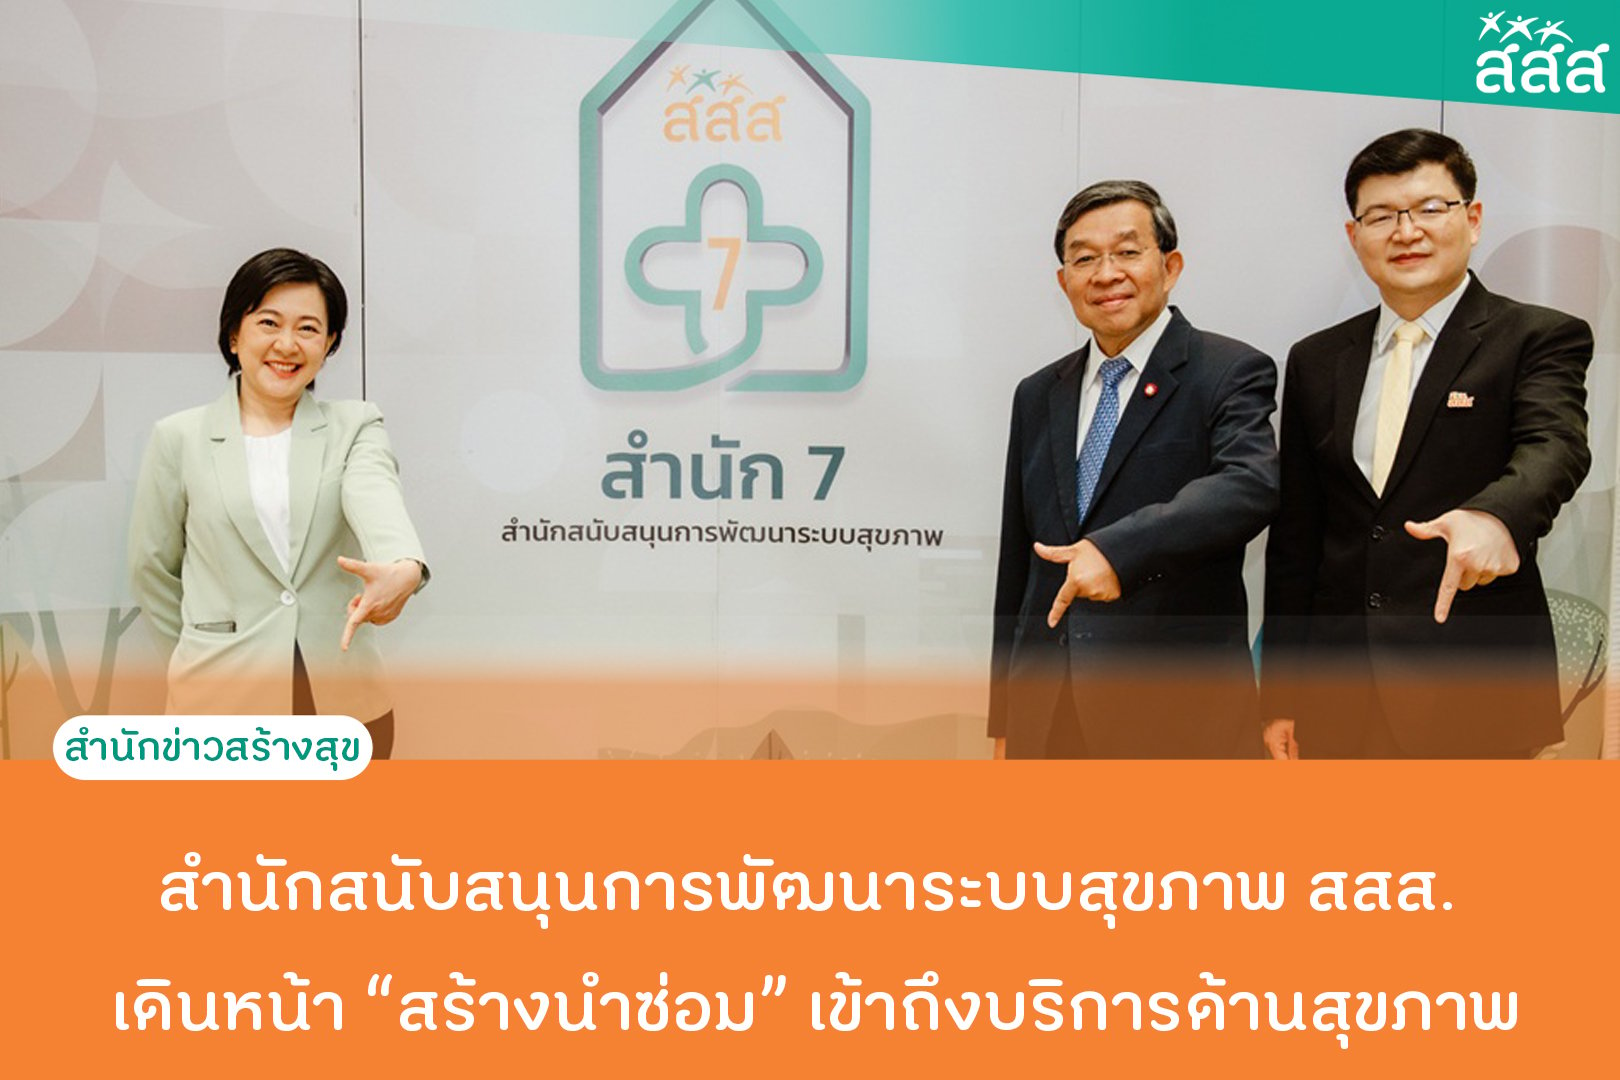 สำนักสนับสนุนการพัฒนาระบบสุขภาพ สสส. เดินหน้าสร้างนำซ่อม เข้าถึงบริการด้านสุขภาพ thaihealth